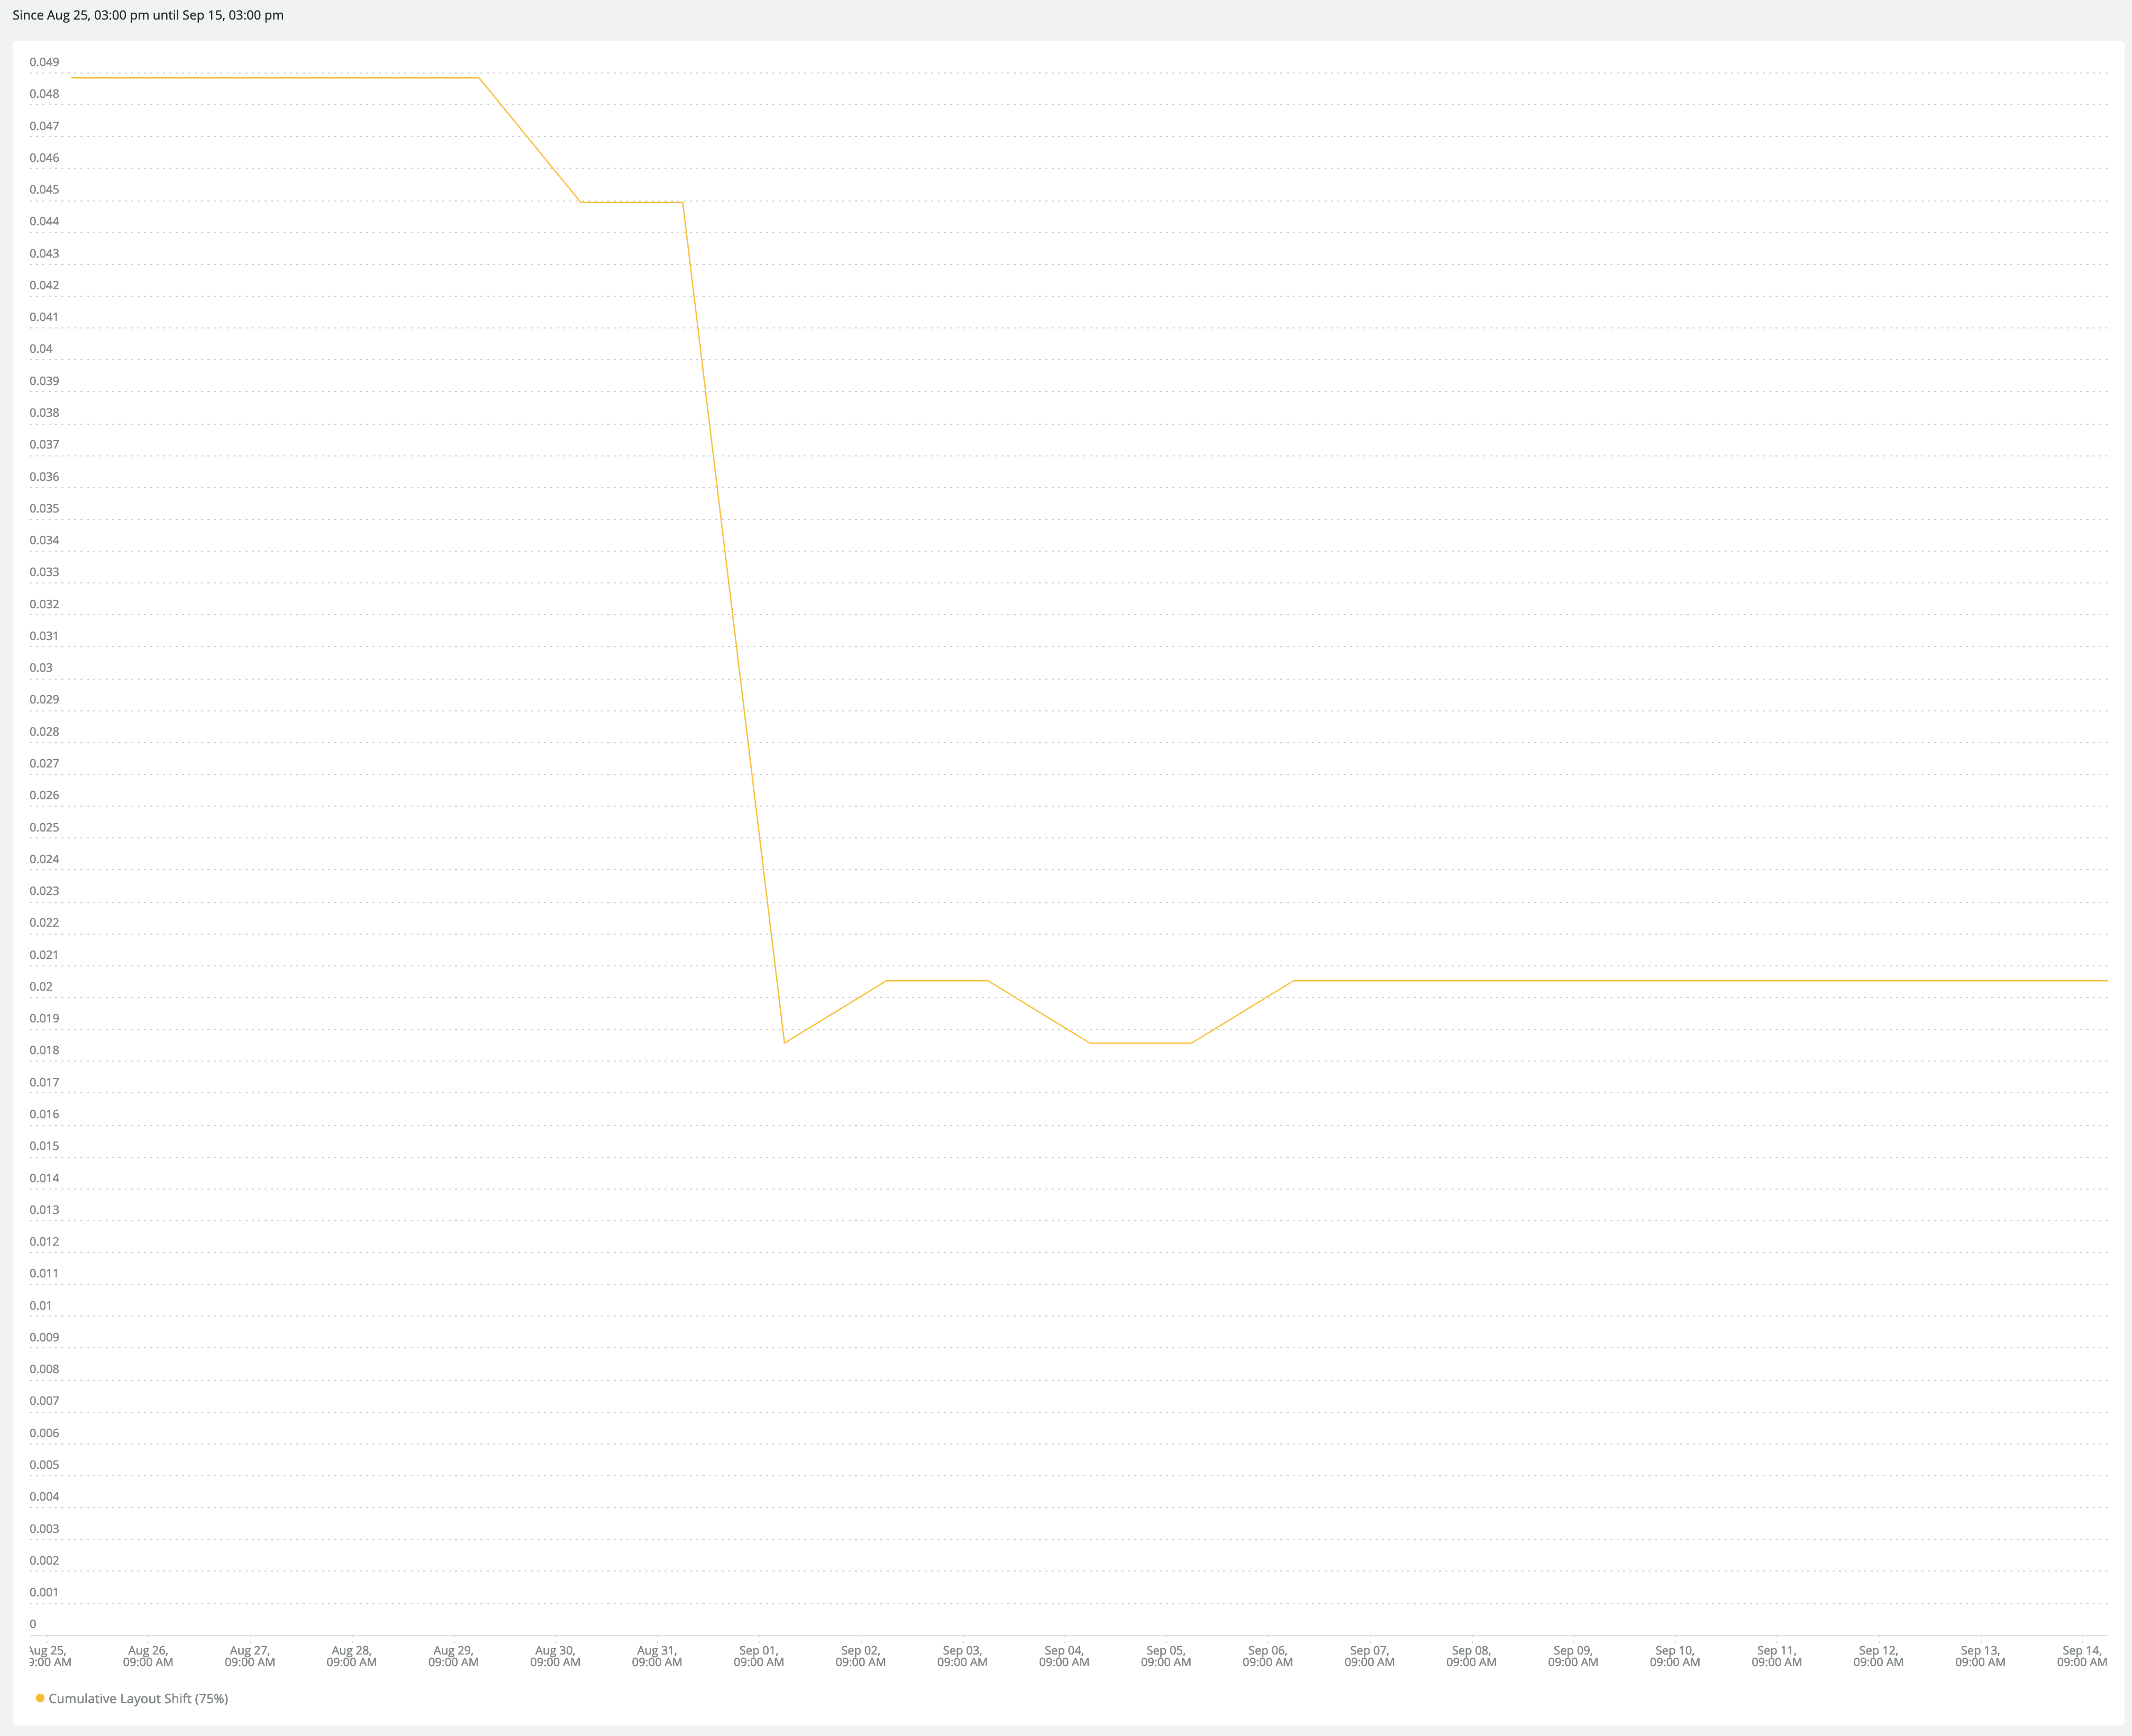 改善から2週間後の RUM グラフ：CLS が 0.05 から 0.02 に改善